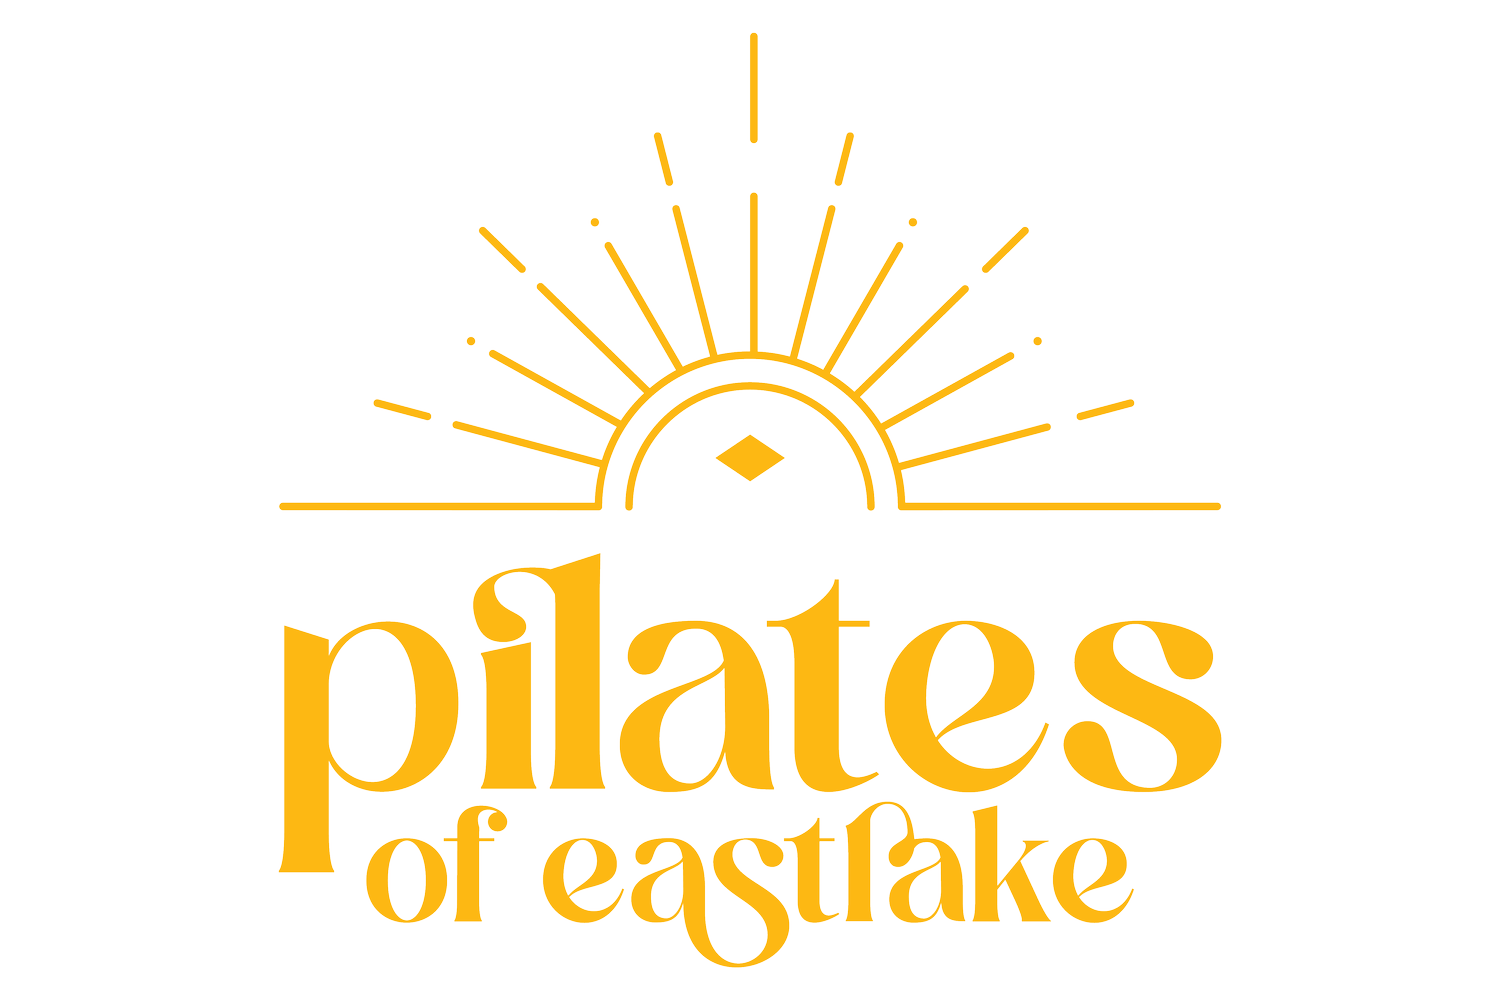 Pilates of Eastlake